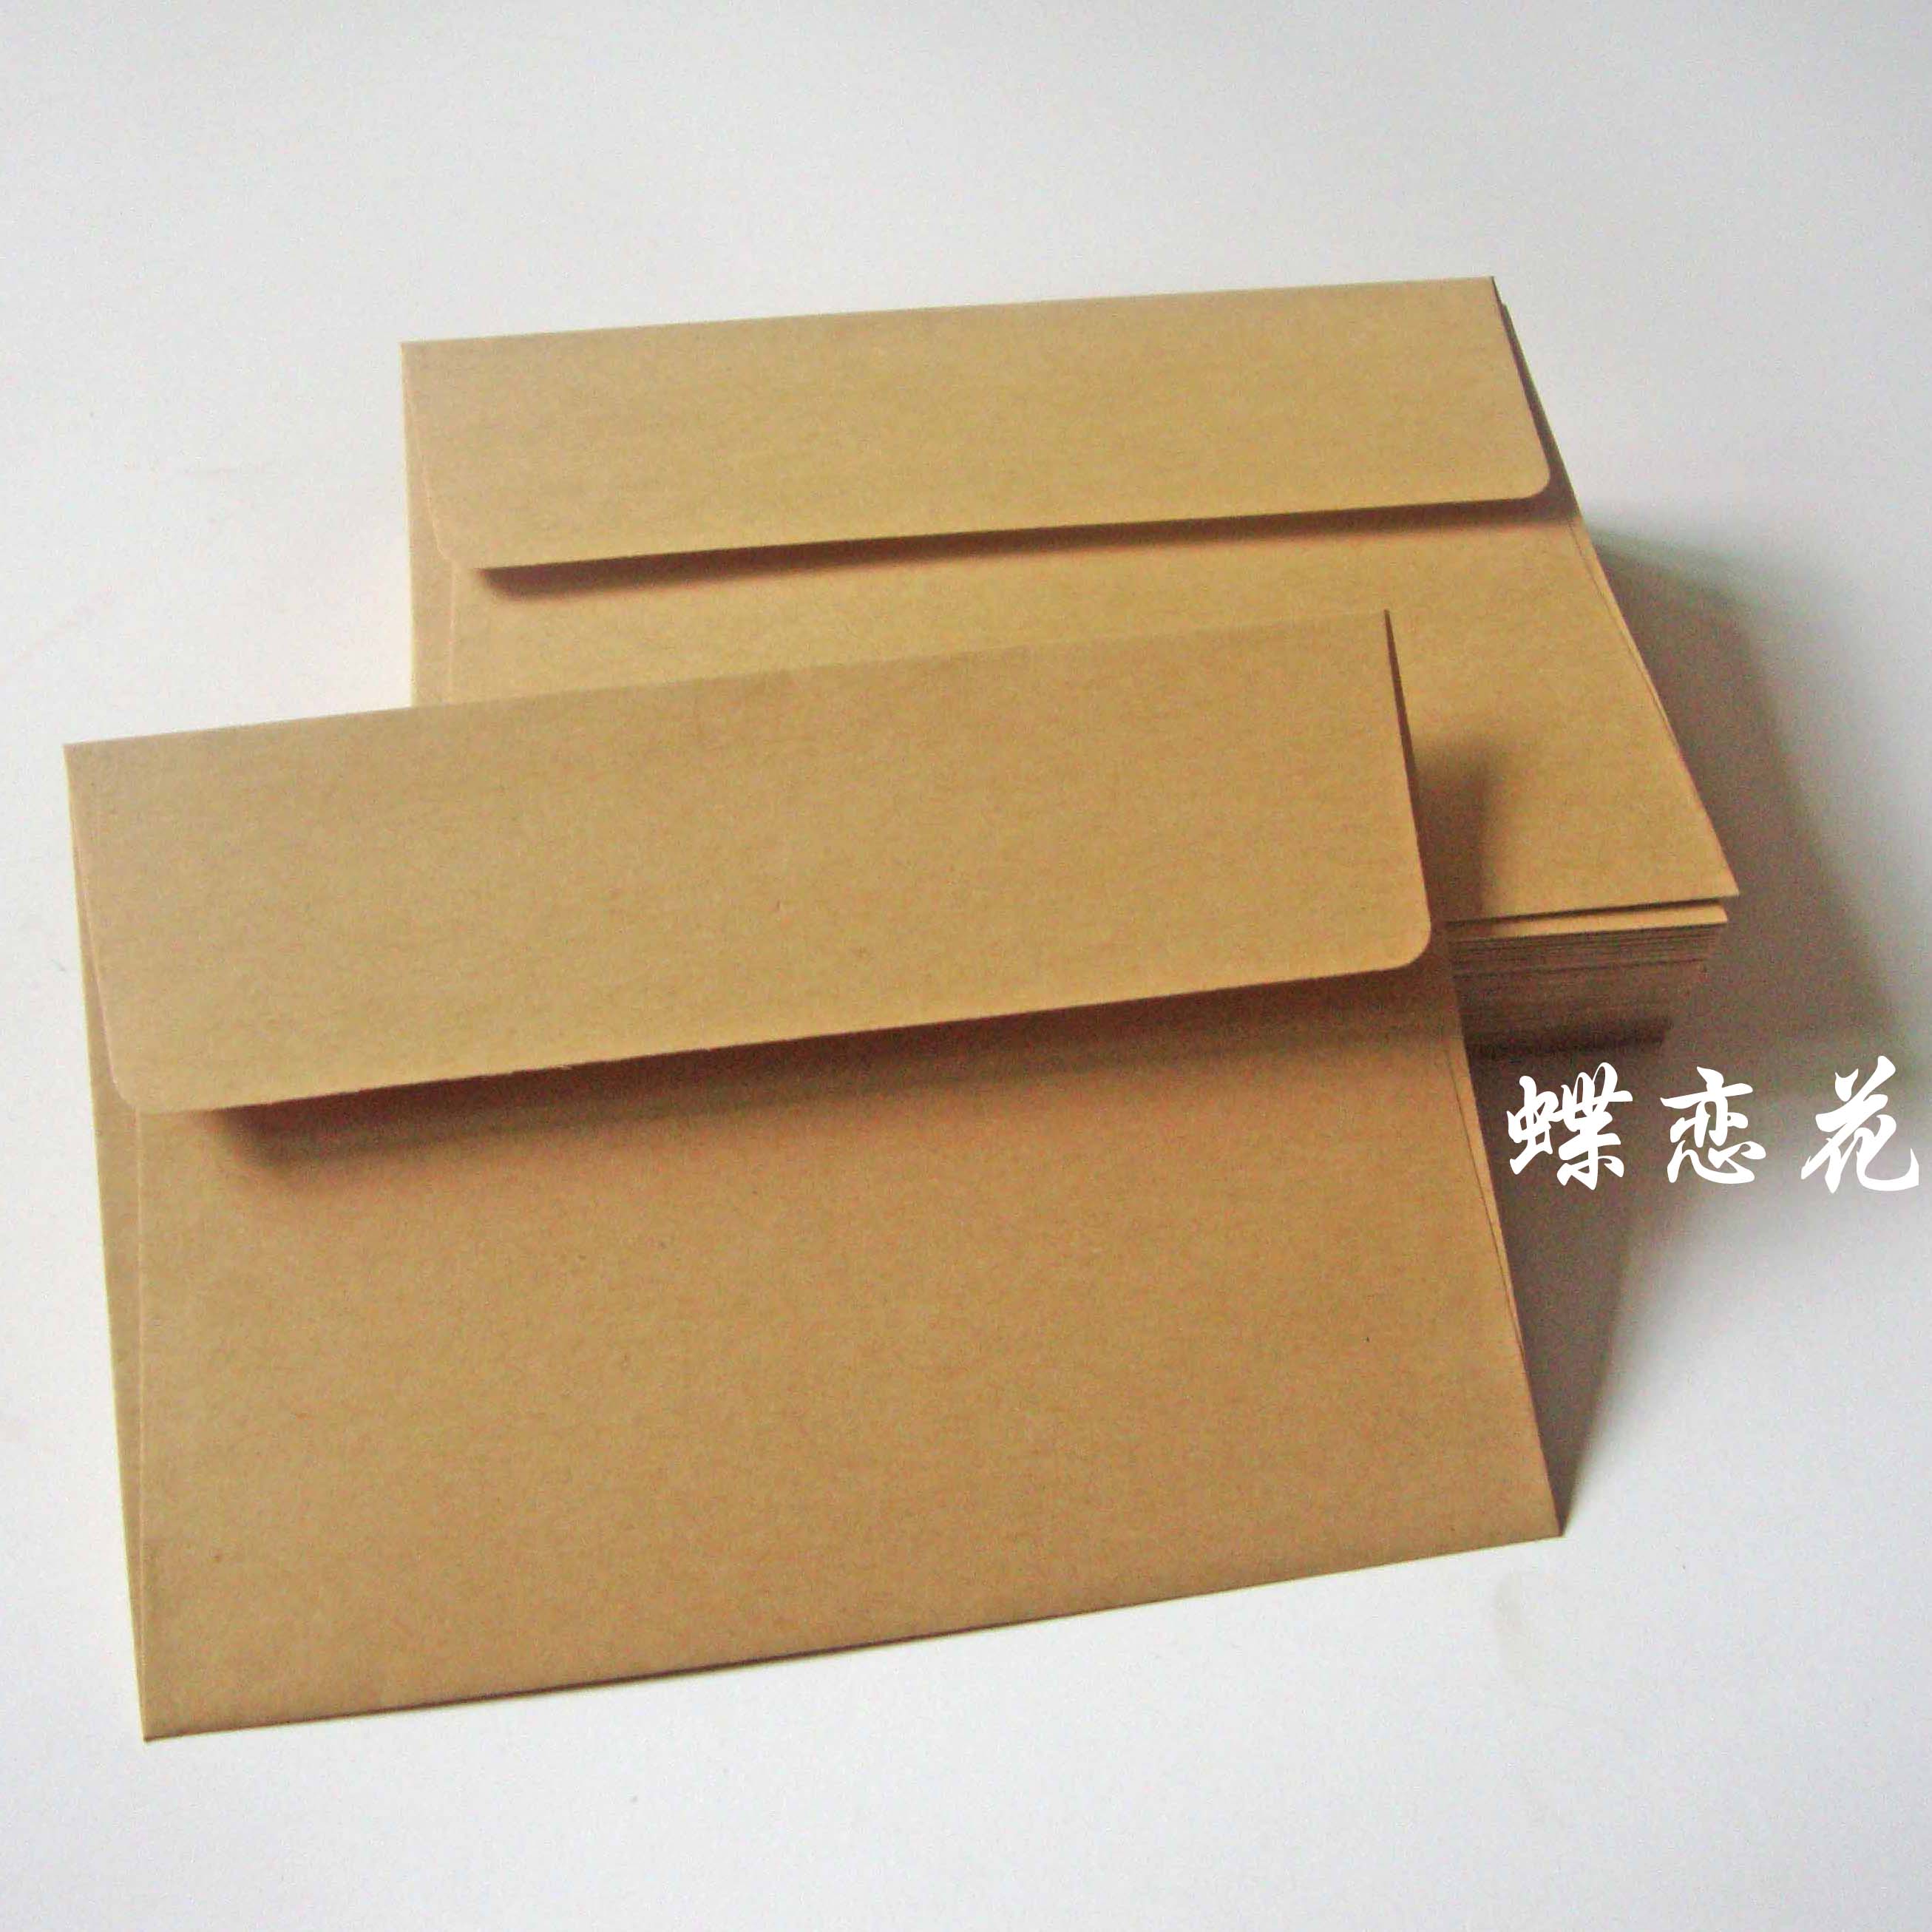 厂家直销 120g进口牛皮纸信封 空白无印刷 DIY手绘17.5x12.5 厘米